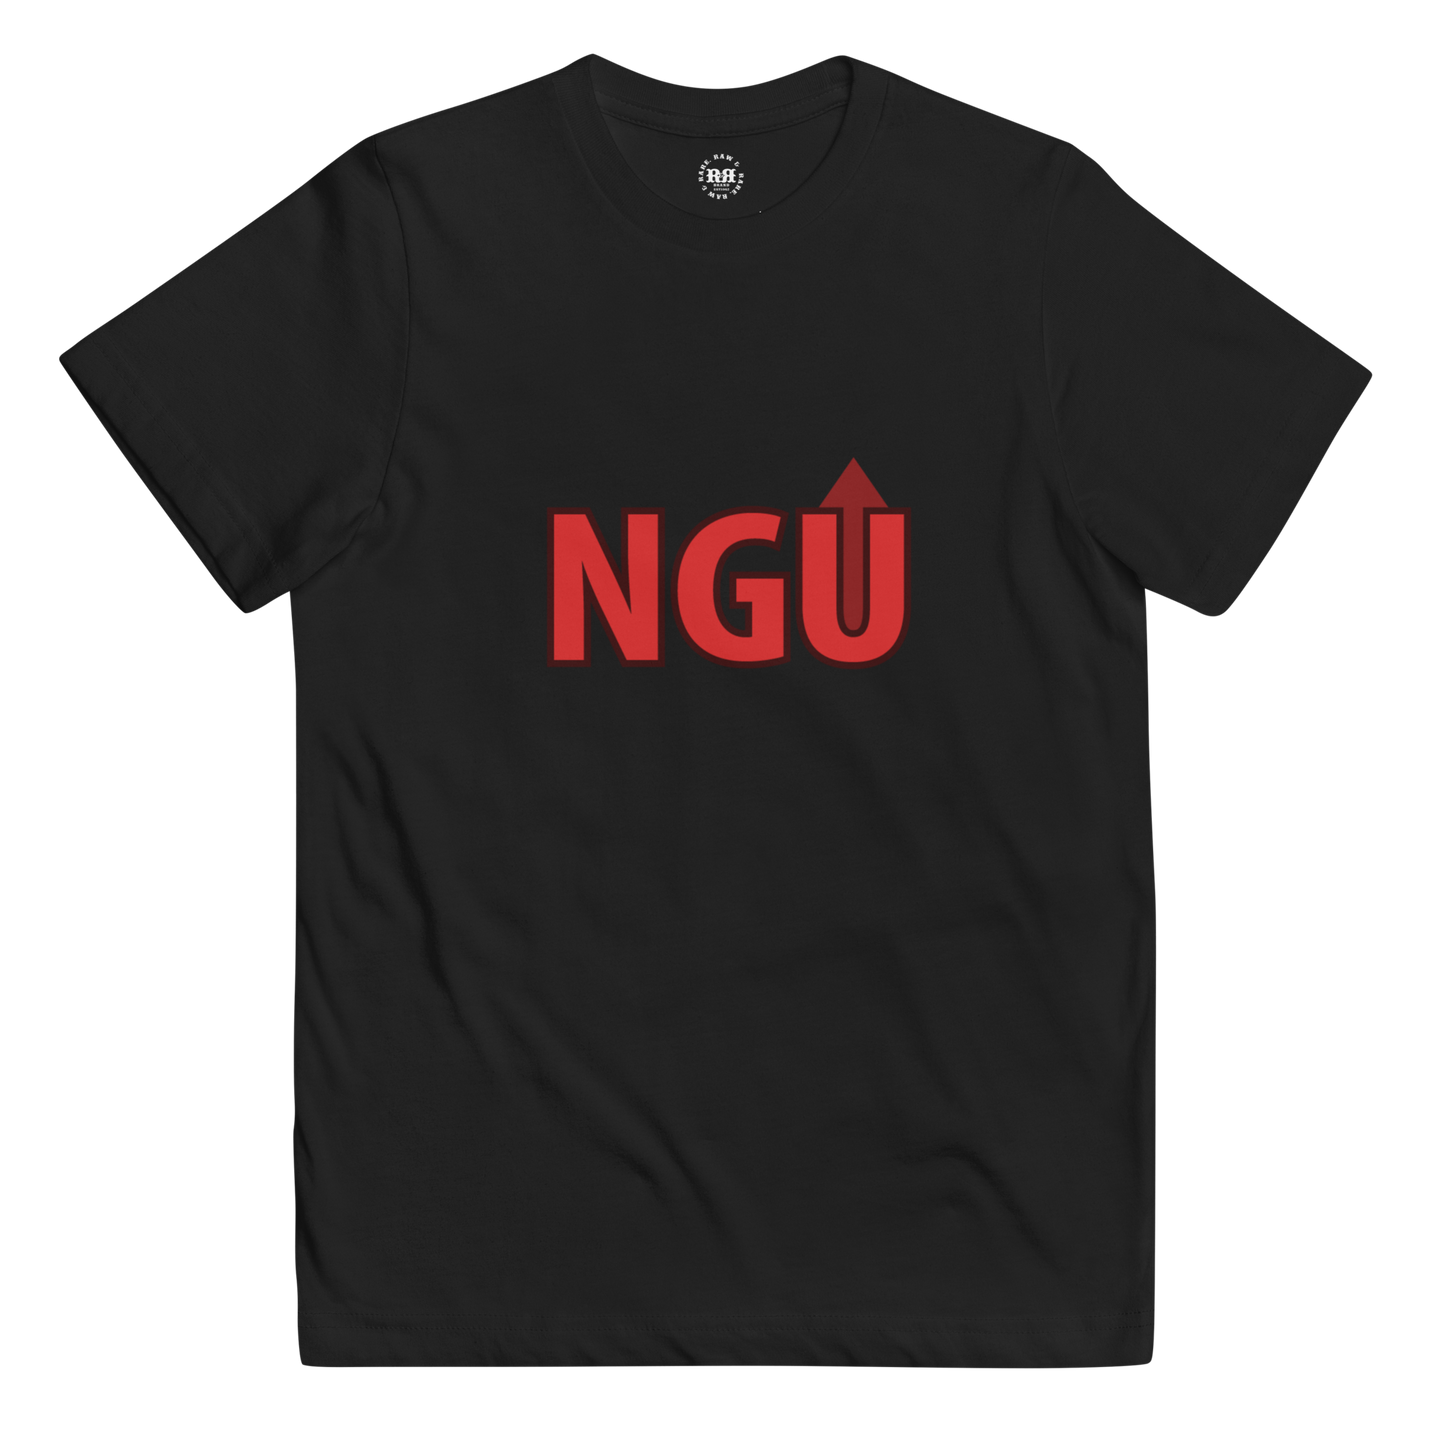 Next Gen Up Youth t-shirt